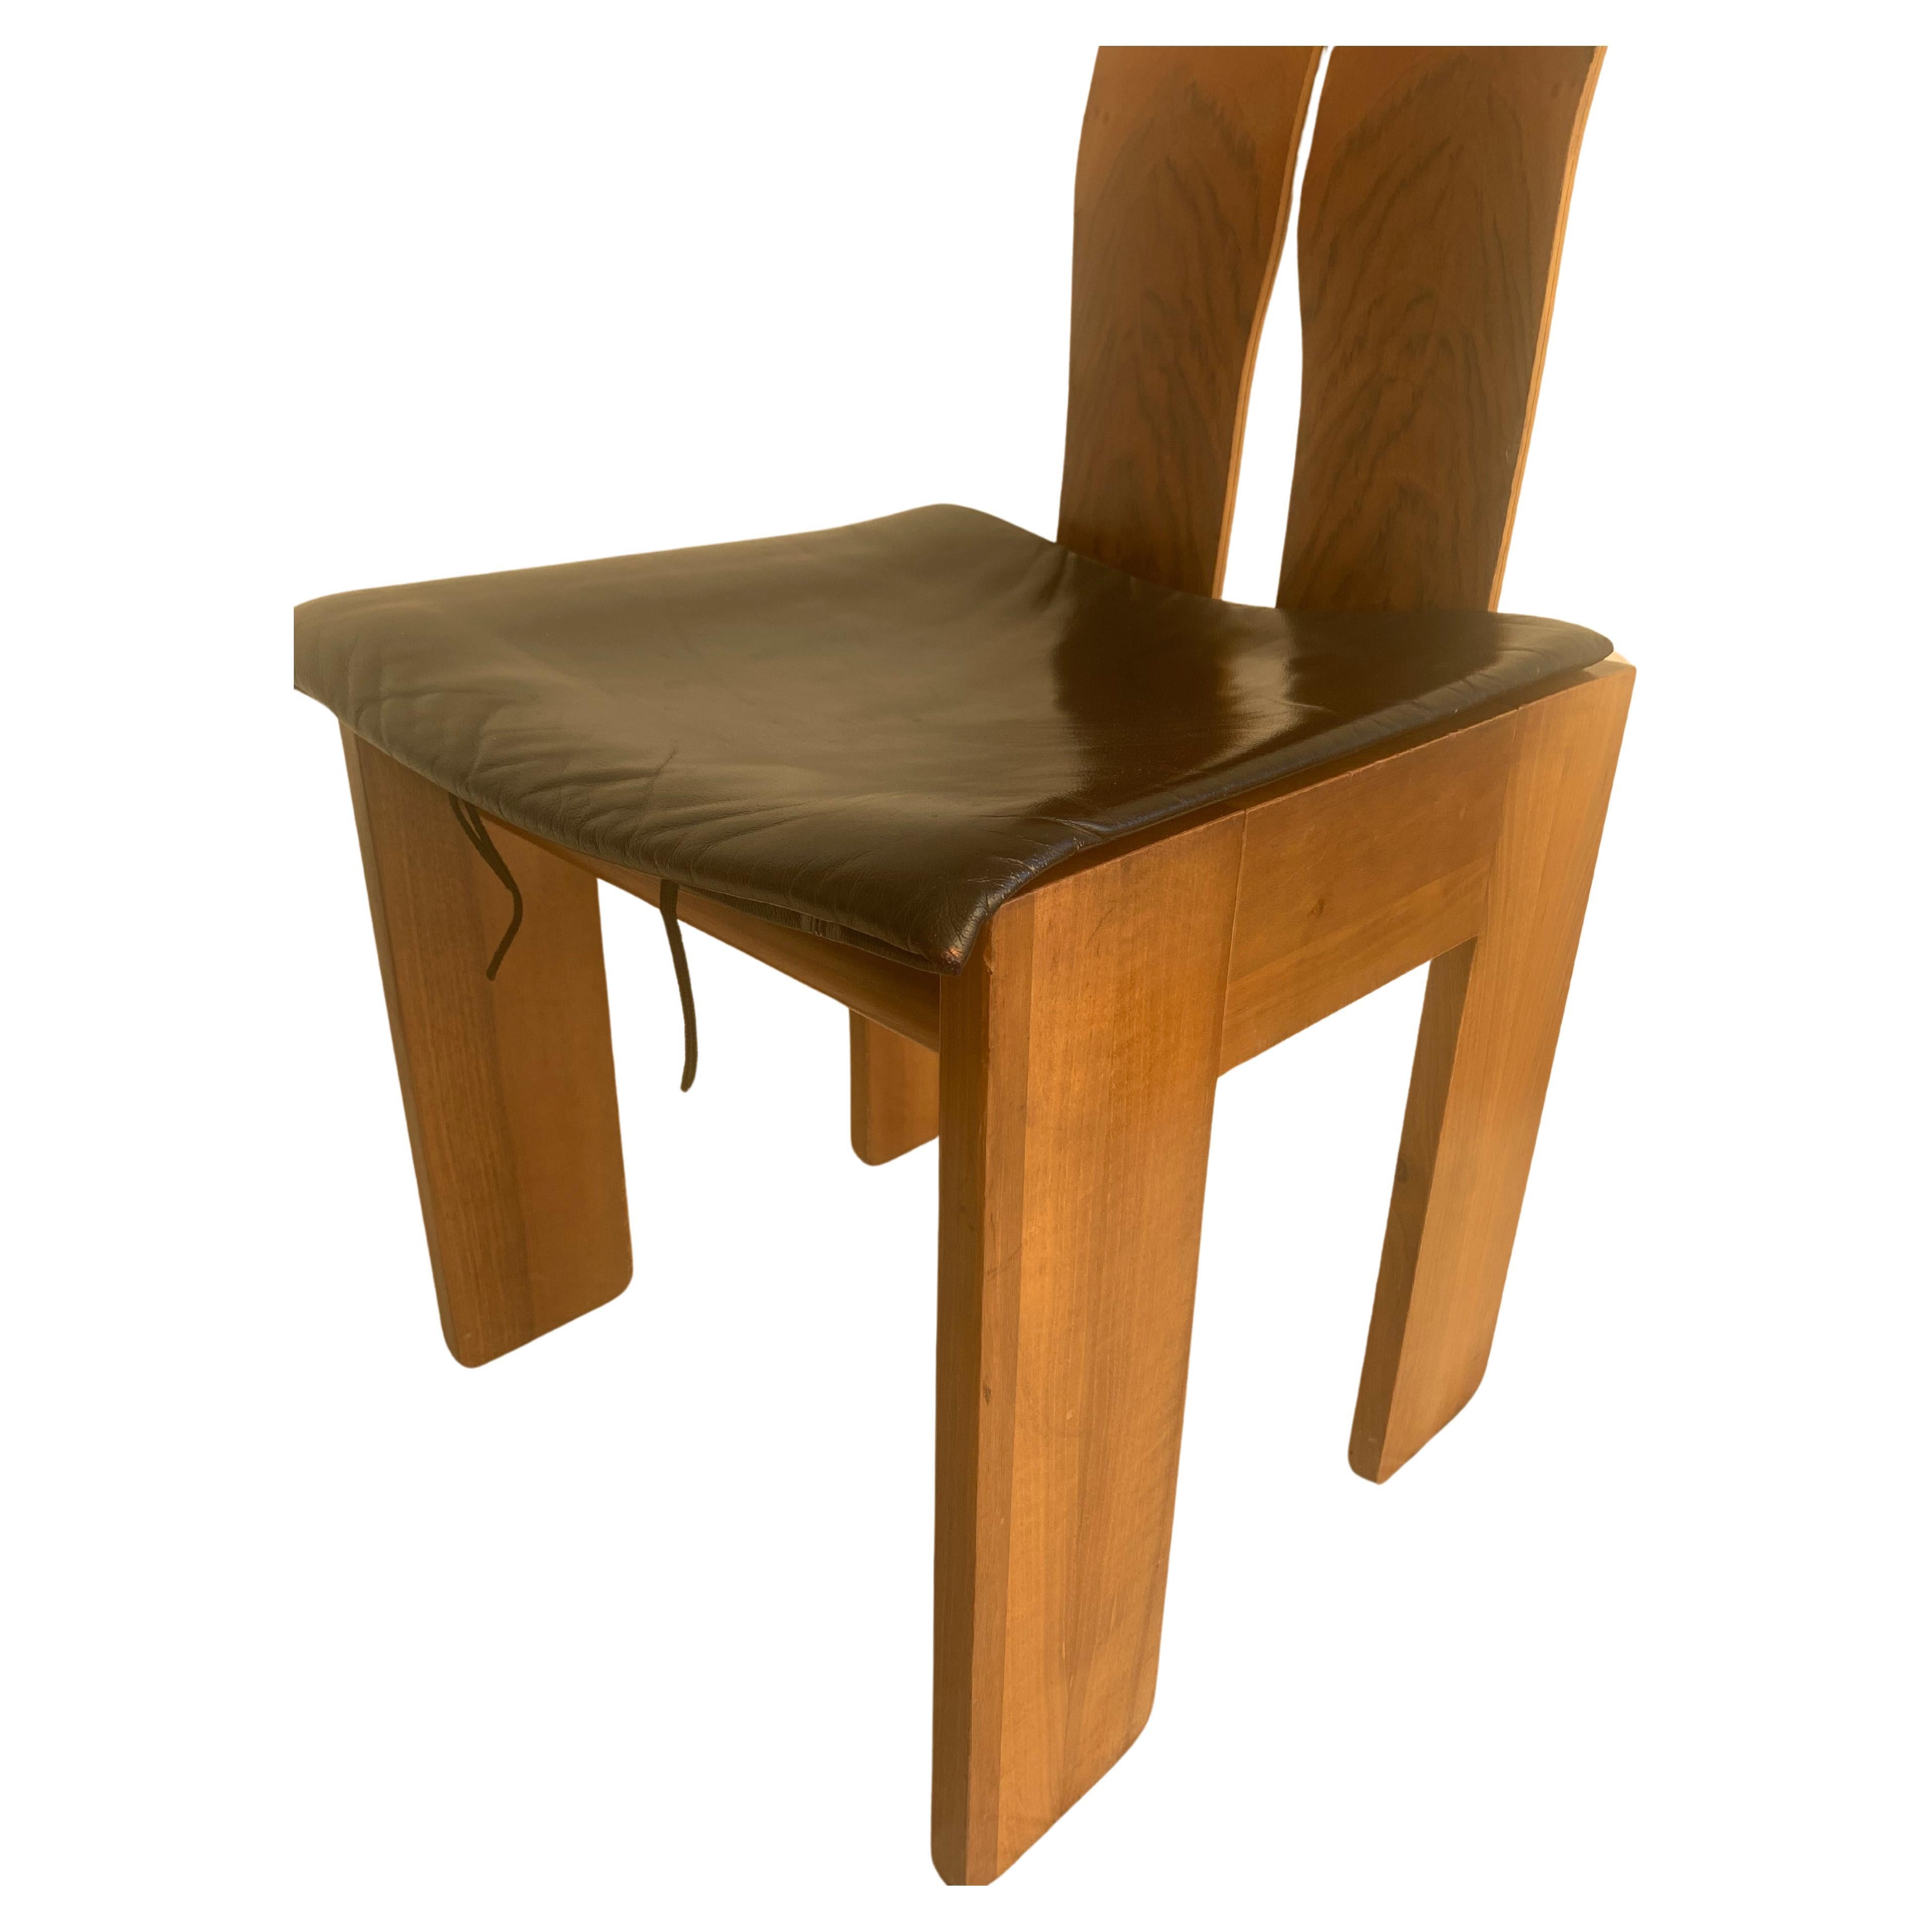 Carlo Scarpa Nussbaum und schwarzes Leder Stühle mod. 1934/765 für Bernini, 1977.


765 wird von Carlo Scarpa im Jahr 1934 geplant, dem Jahr, aus dem der Stuhl später seinen Namen erhalten wird, aber er wird erst im Jahr 1977 produziert.

Der Autor